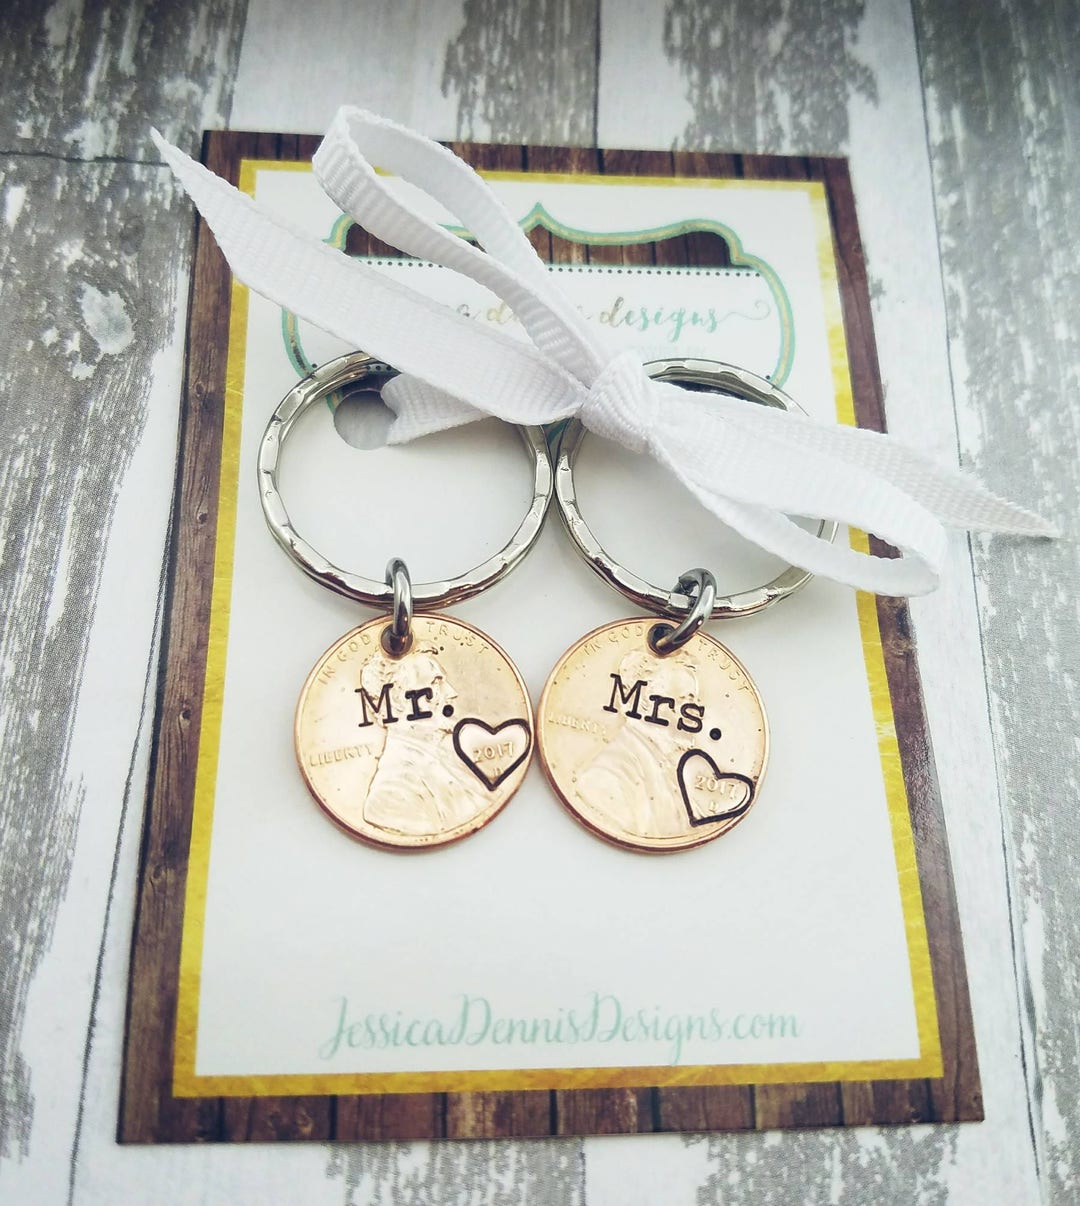 Mr. & Mrs. Penny Key Chain Set Wedding Gift Wedding YEAR - Etsy